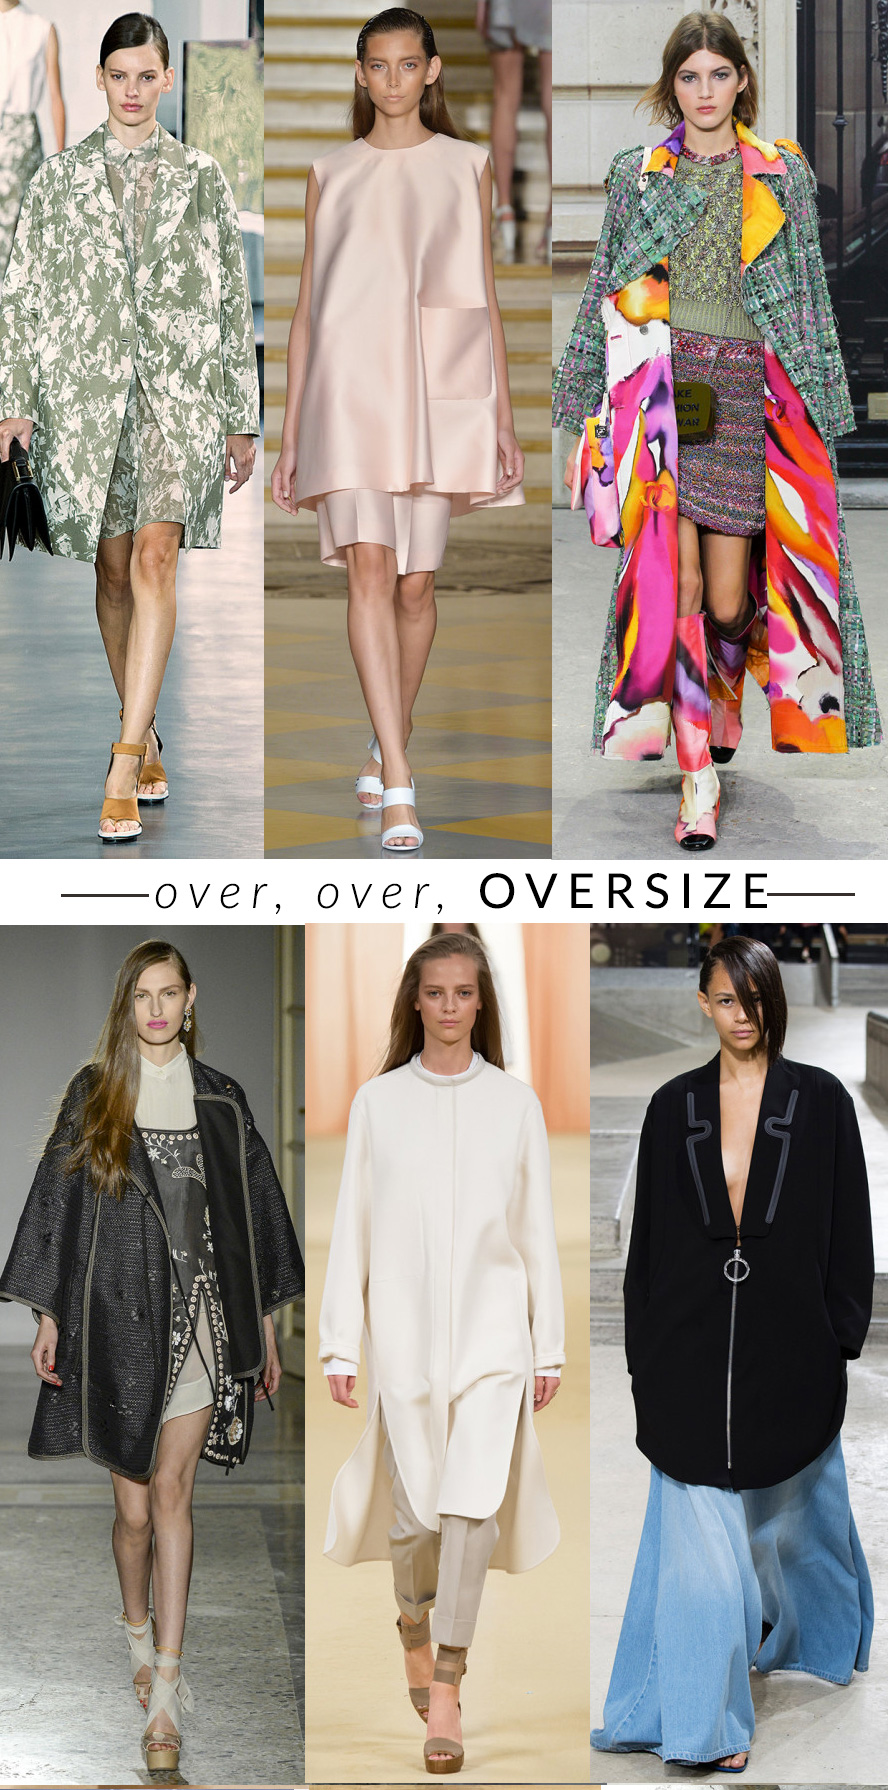 oversize trend moda primavera estate 2015 fashion blogger elena schiavon 